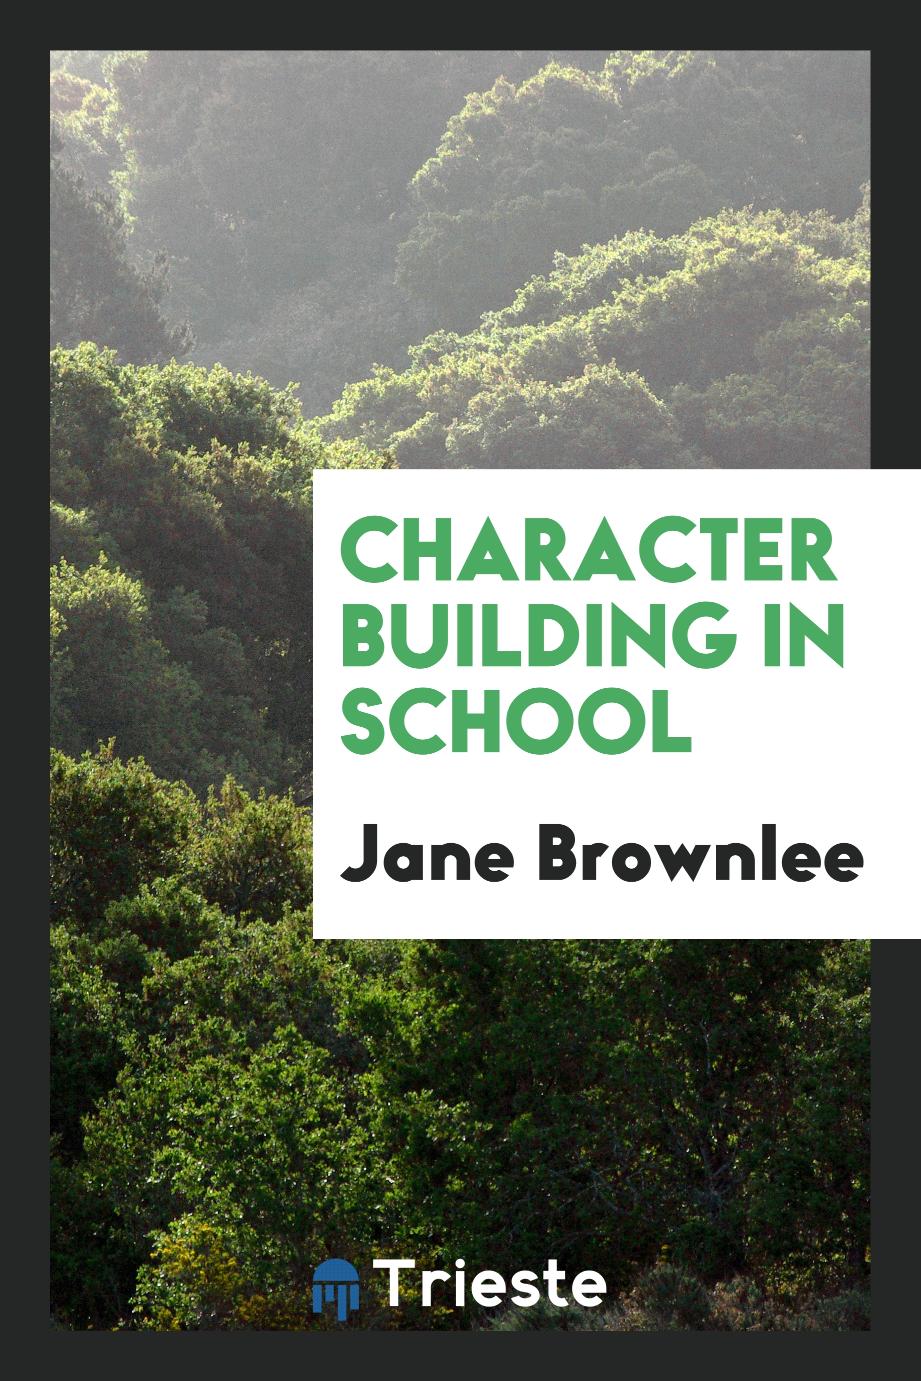 Character building in school